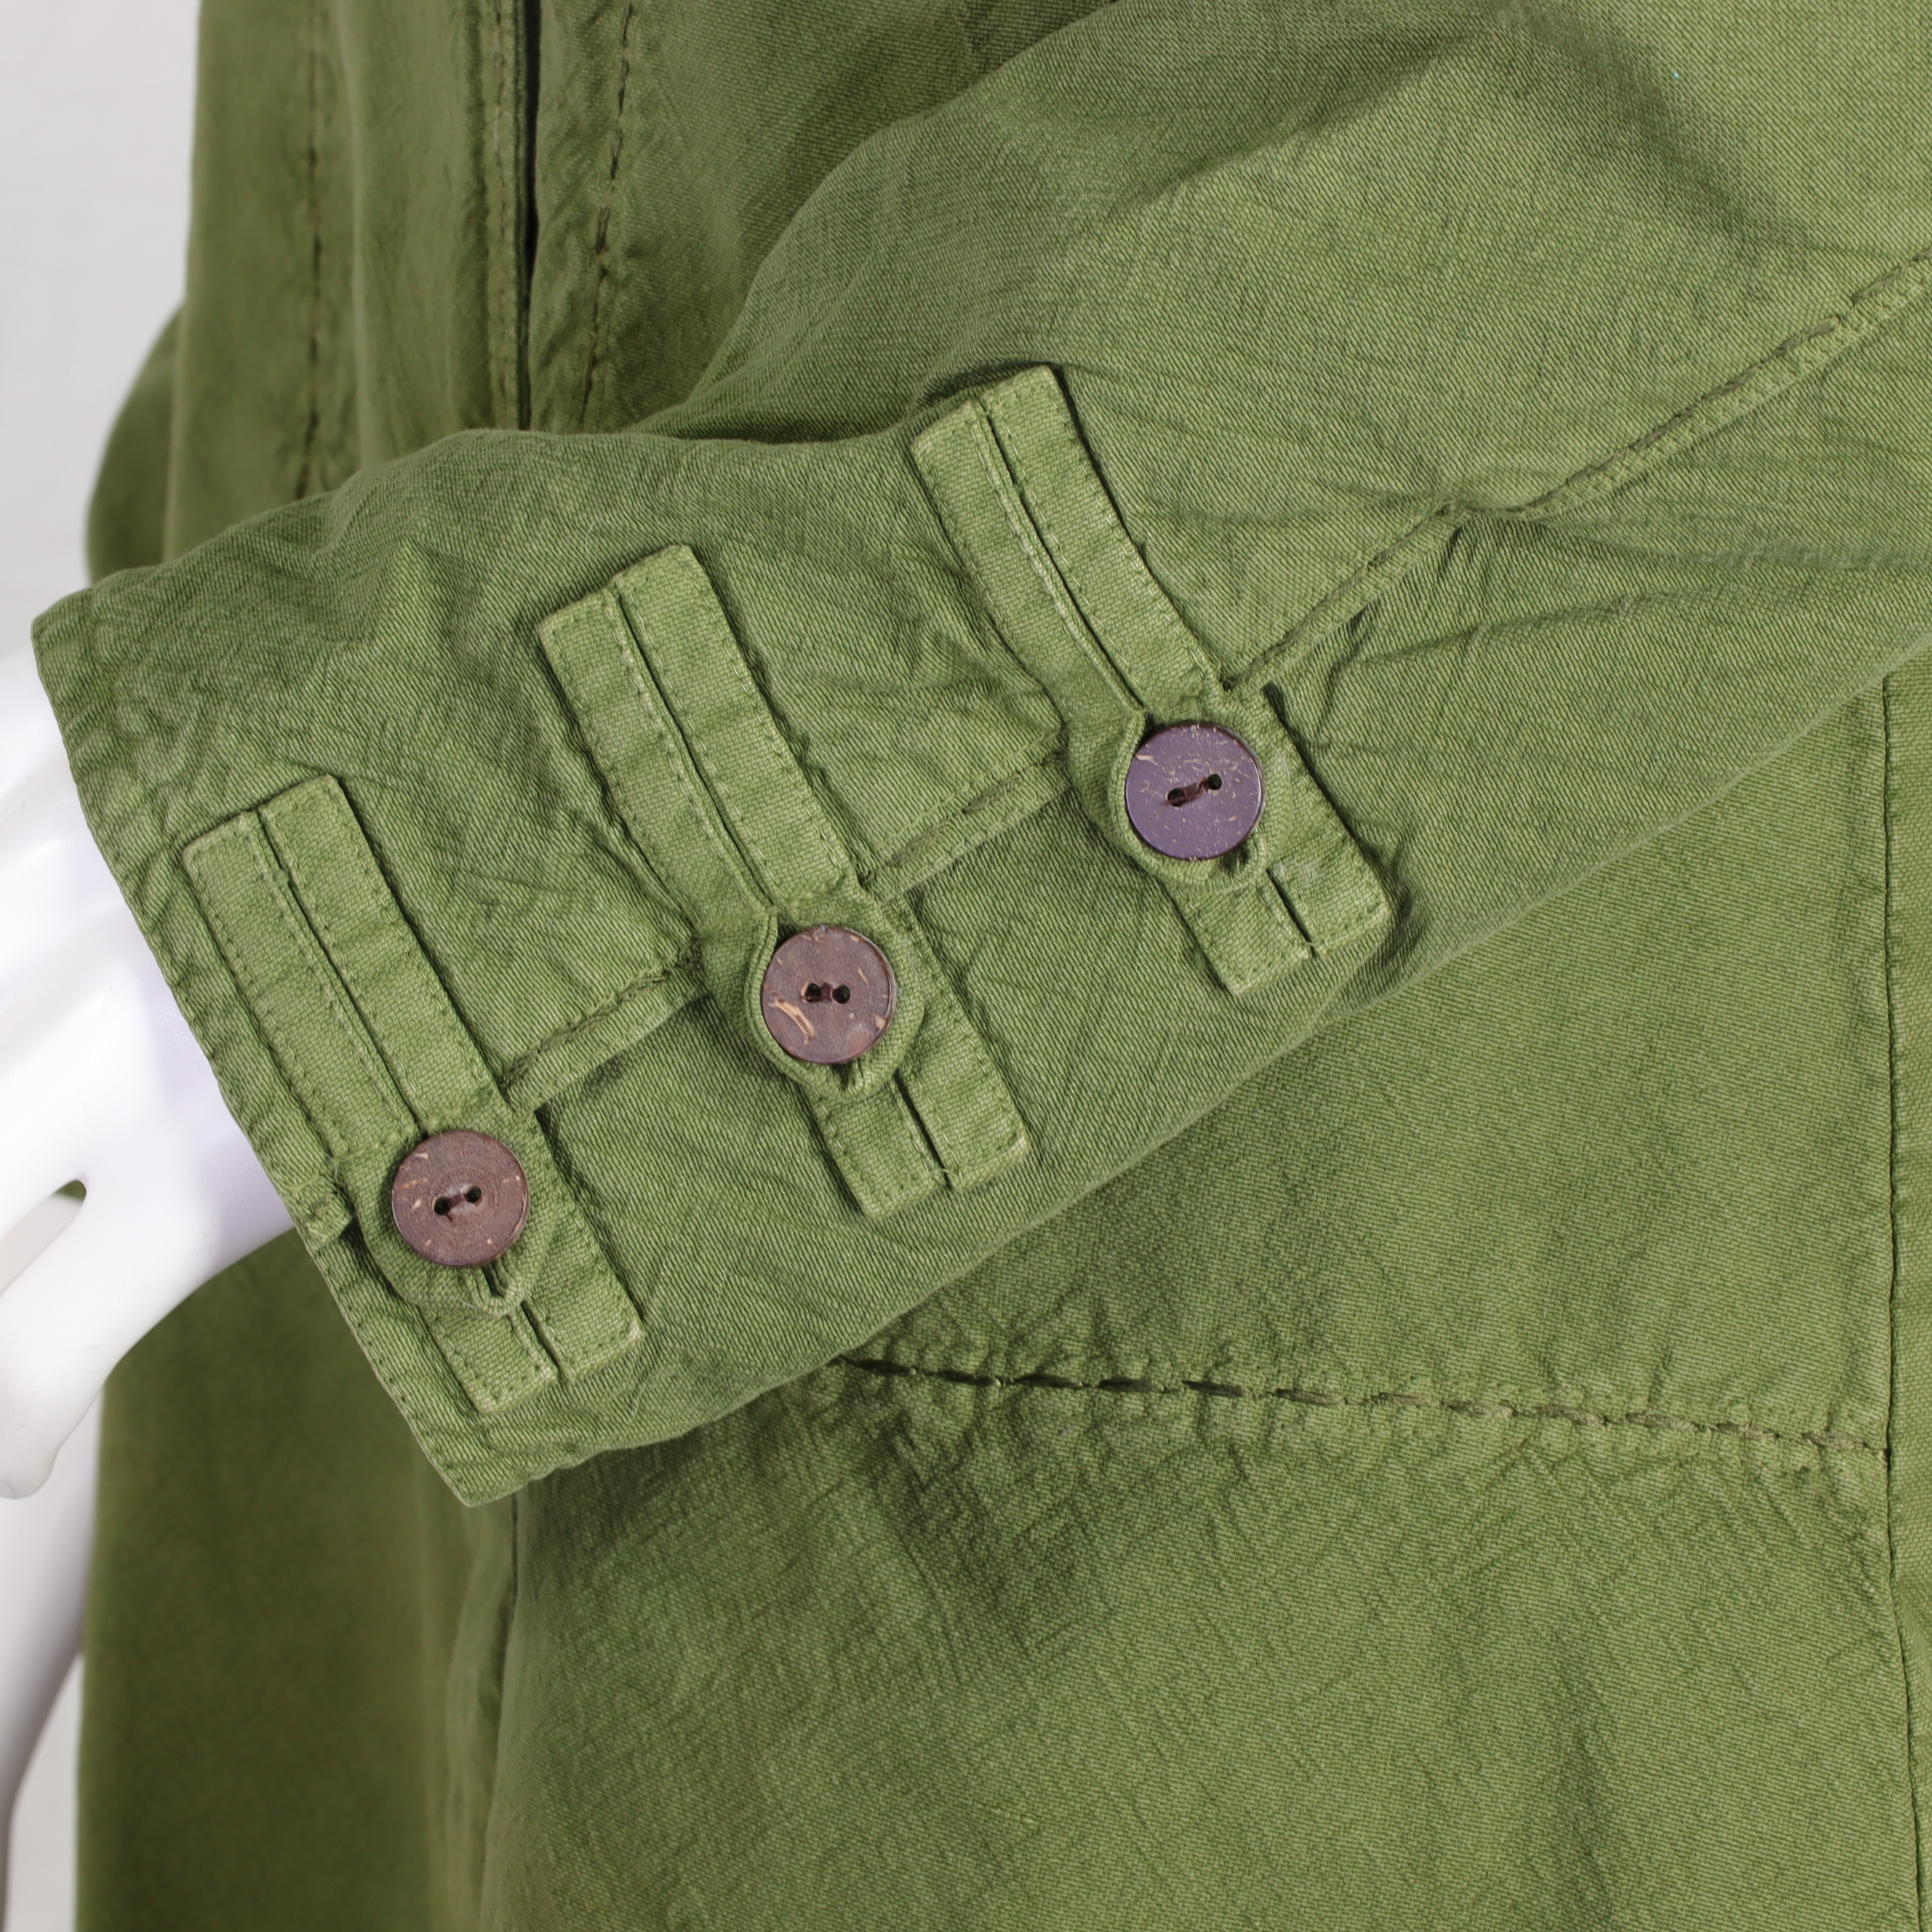 Mantel mit Stehkragen als Trenchcoat - 100% Baumwolle - modisch und zeitlos für den Übergang - fair gehandelt aus Nepal